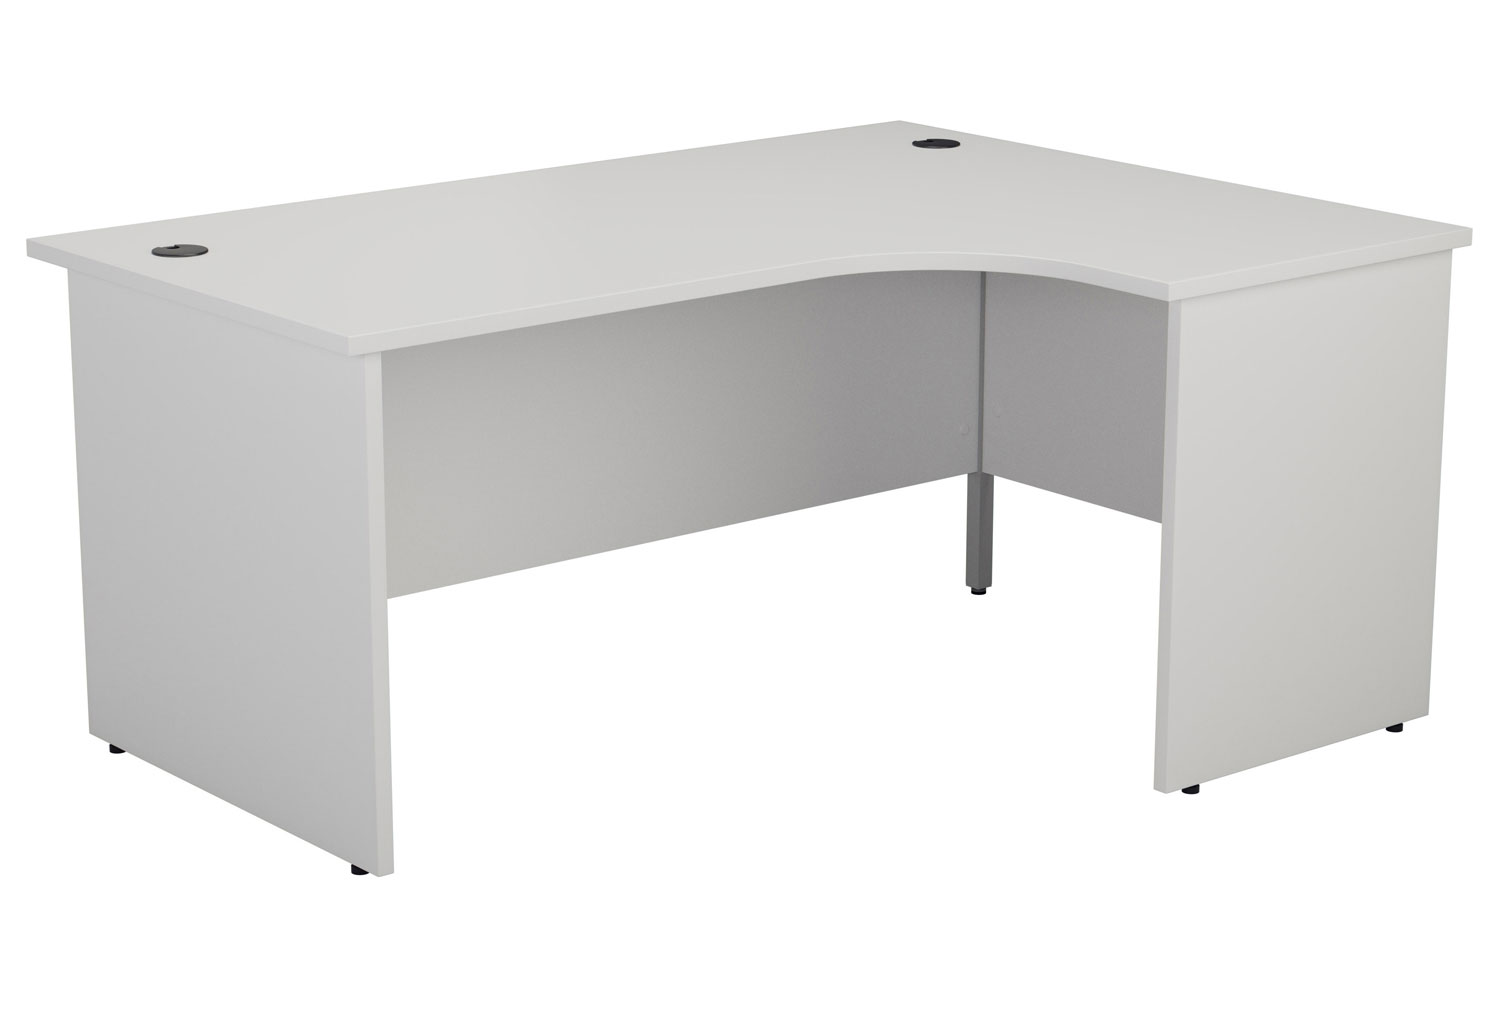 Proteus Panel End Right Hand Ergonomic Office Desk, 160wx120/80dx73h (cm), White